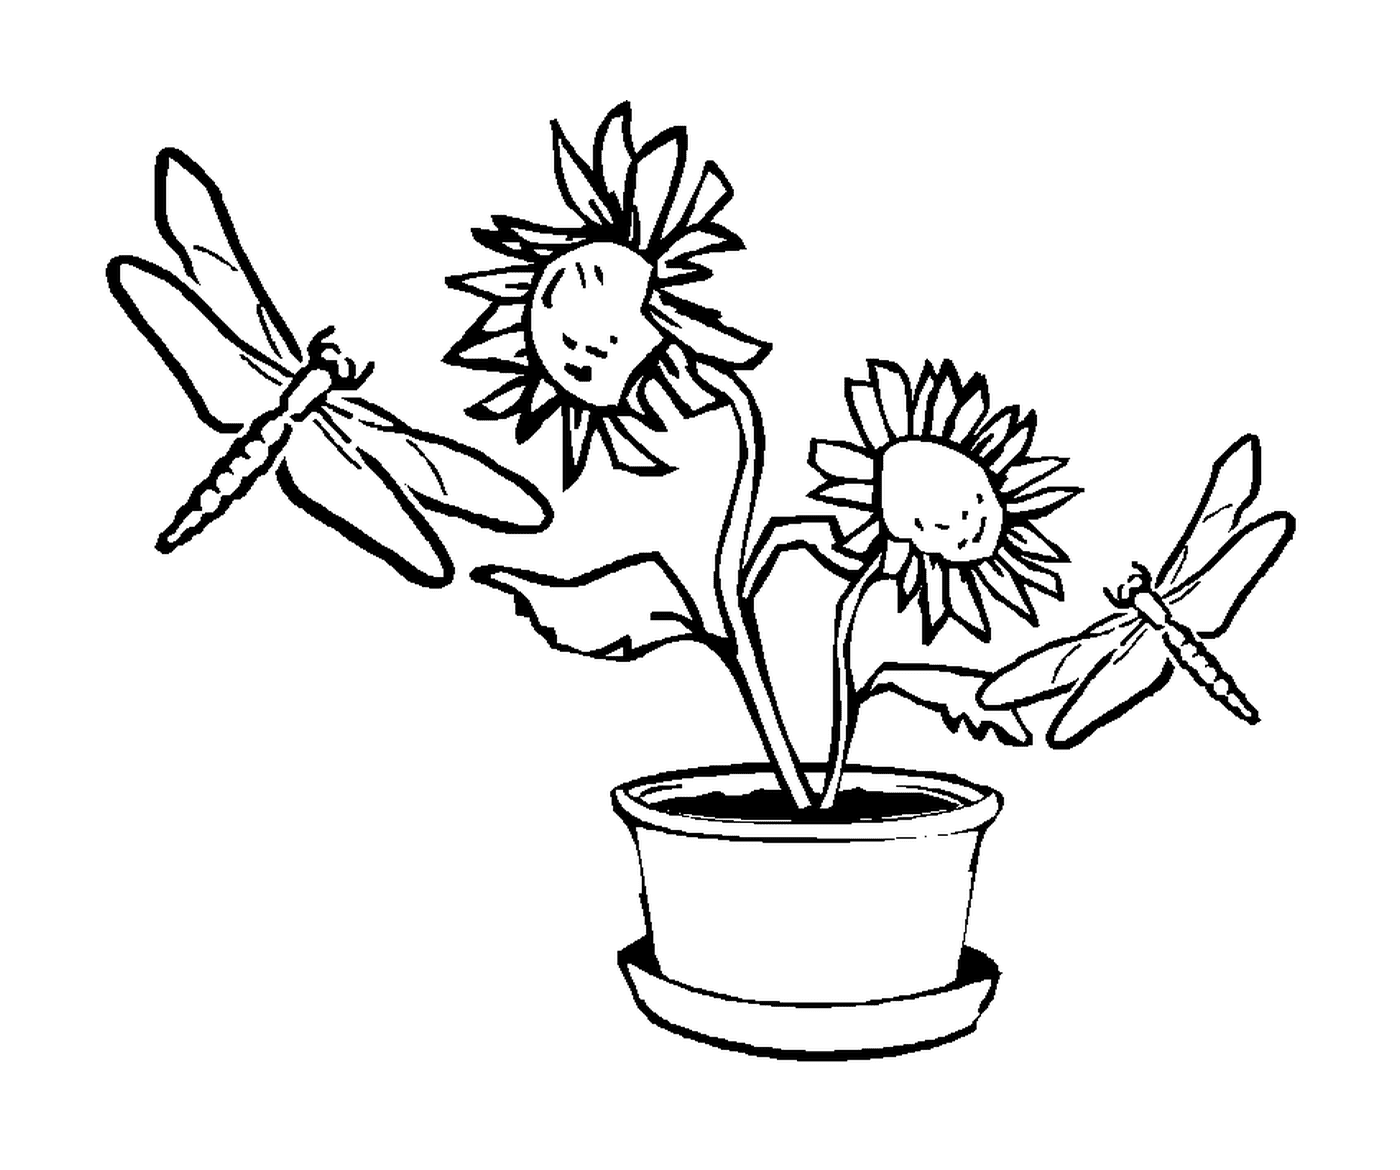   Deux libellules volant autour d'un pot de fleurs 